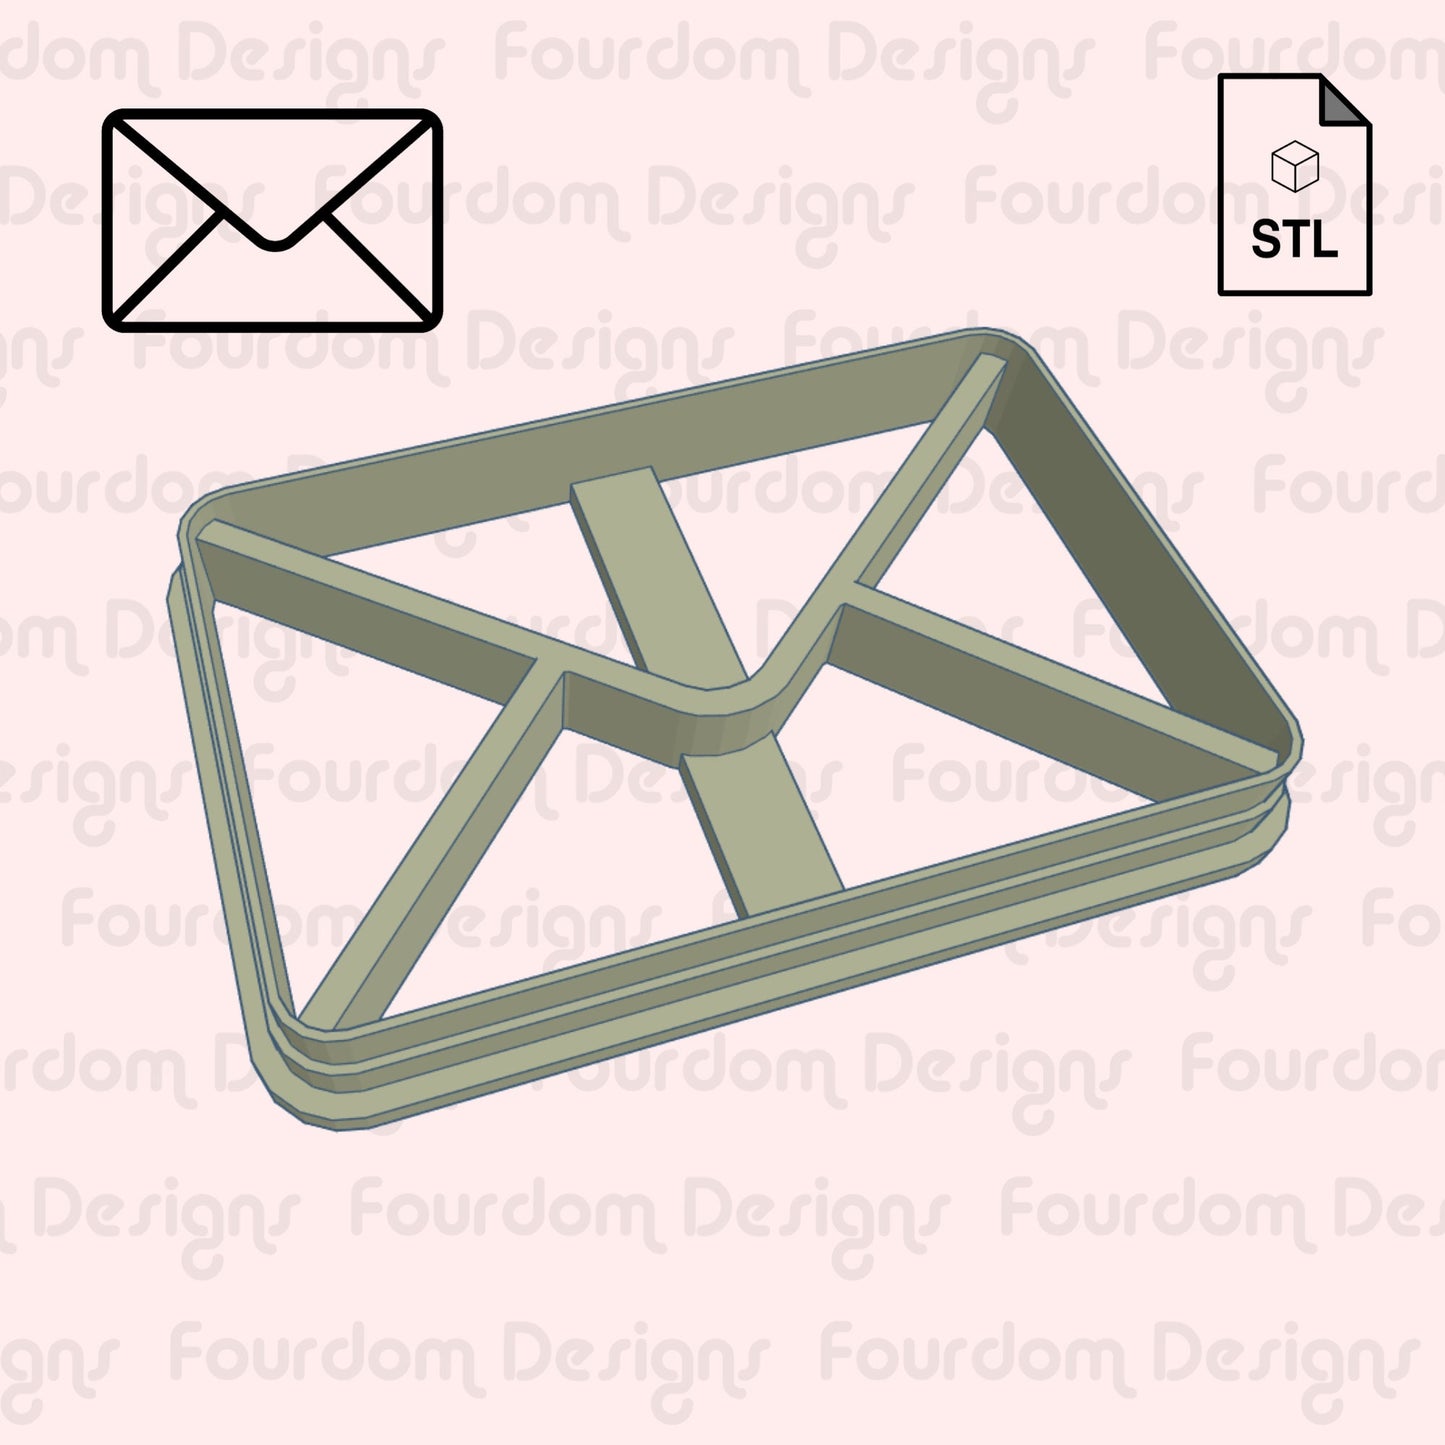 Envelope Cookie Cutter Digital Download STL File for Cookie Cutter Fondant Cutter Clay Cutter 3D Model for 3D Printing